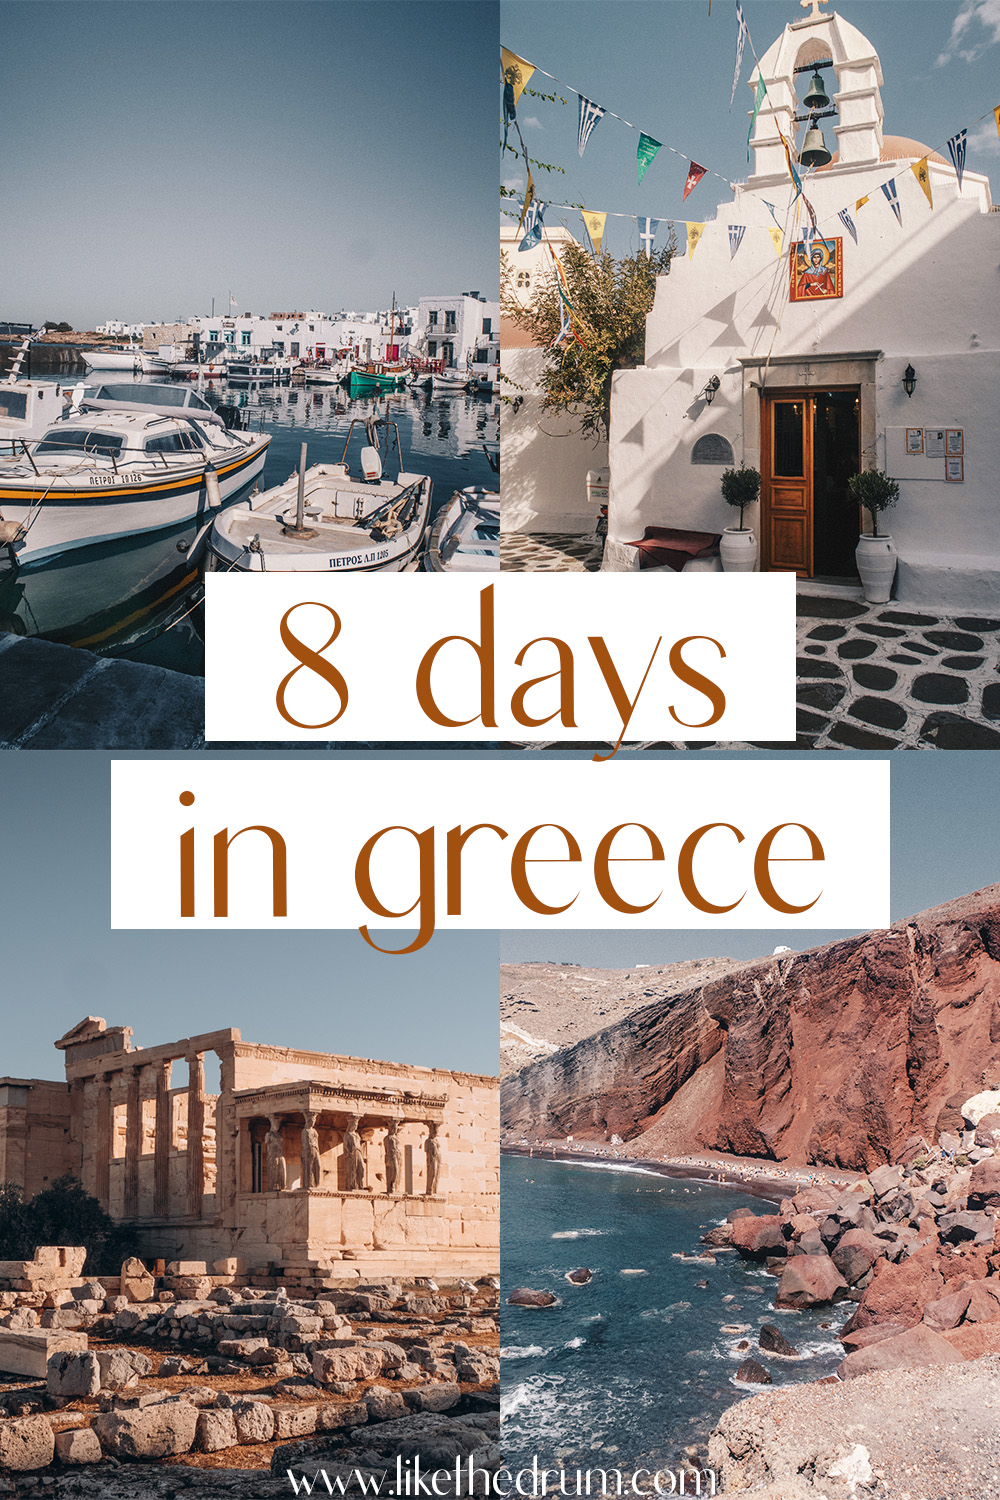 8 day trip to greece